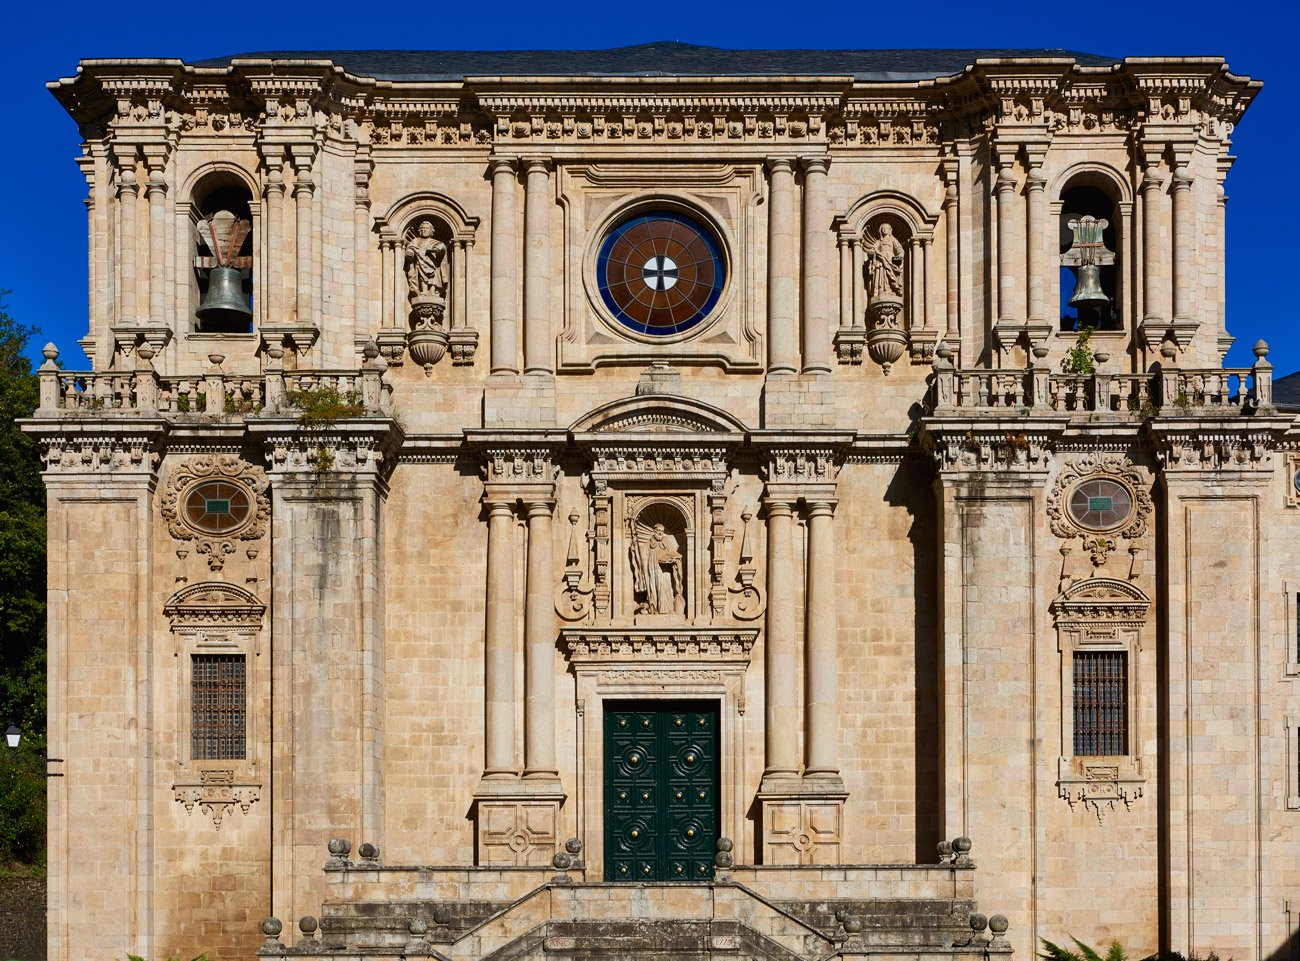 Monasterio de Samos